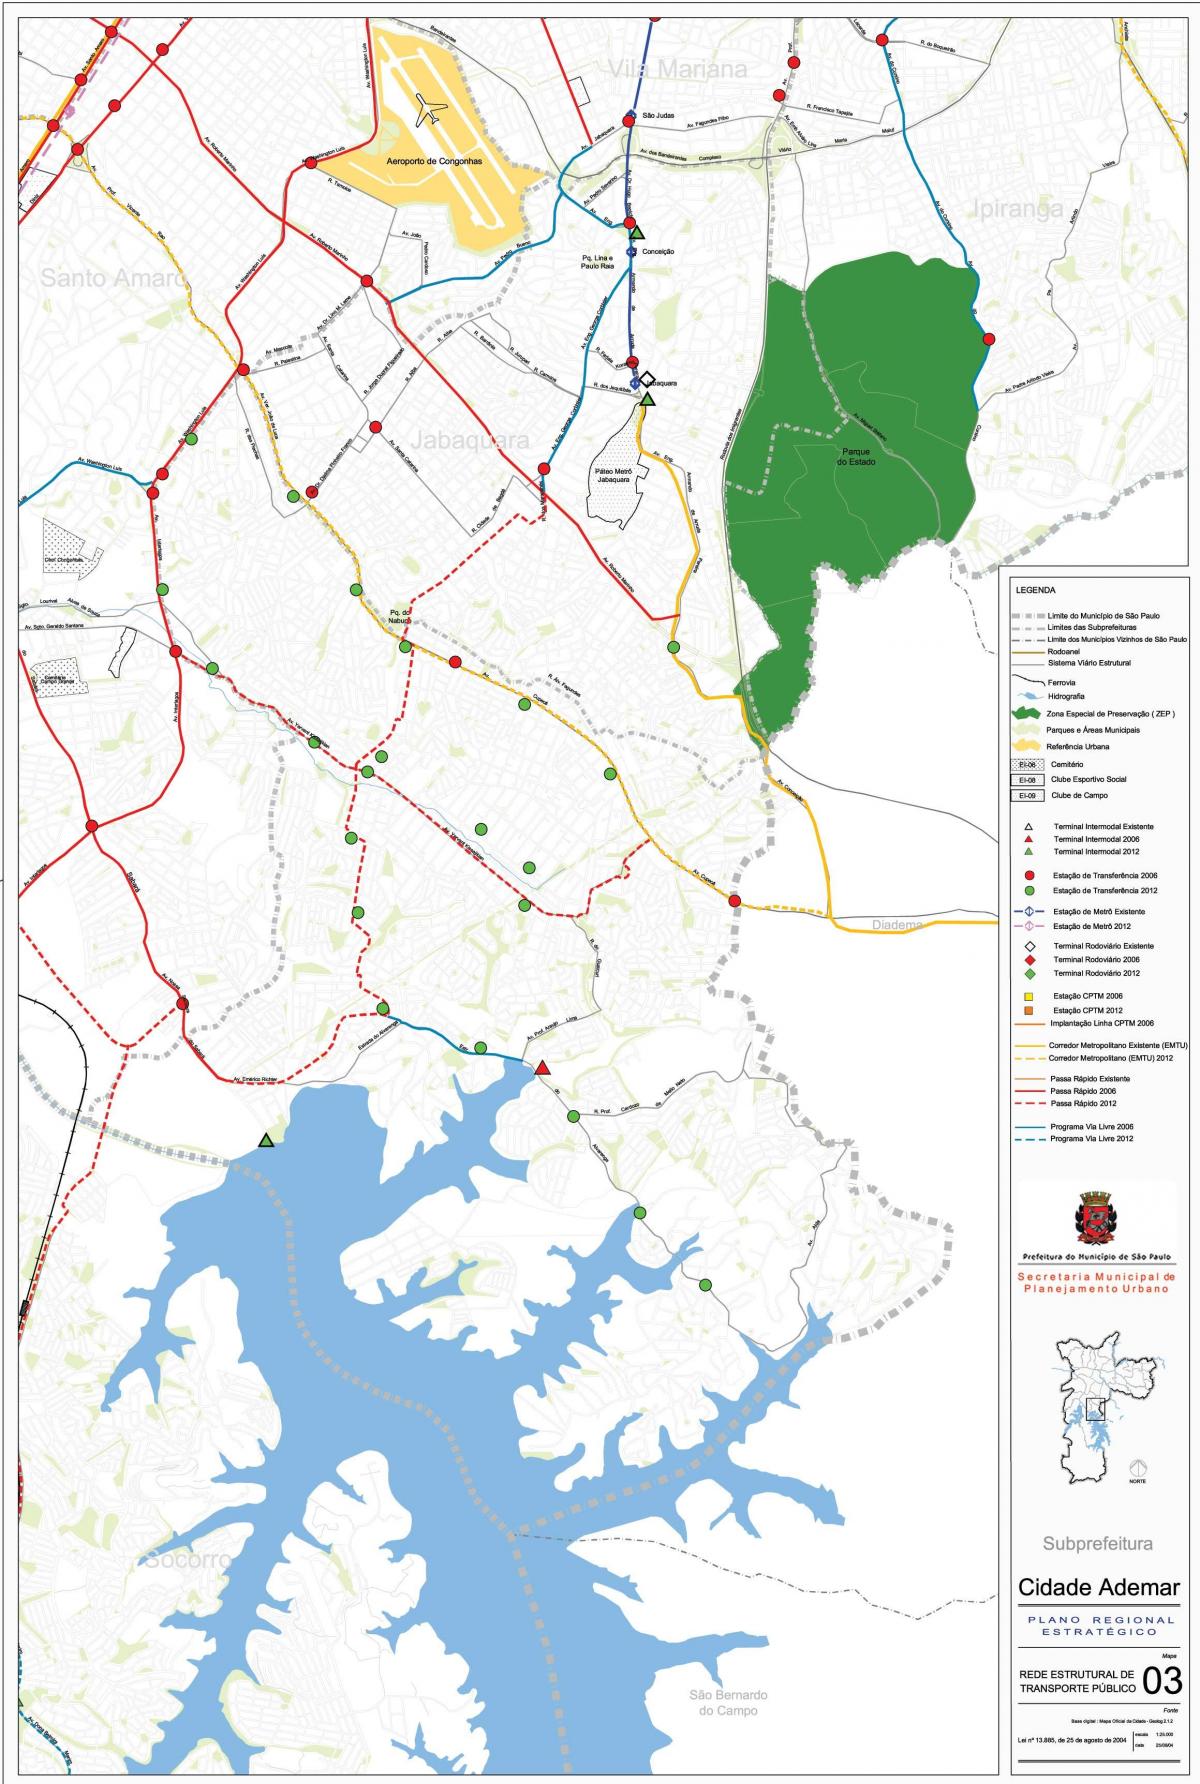 નકશો Cidade Ademar સાઓ પાઉલો - જાહેર પરિવહન